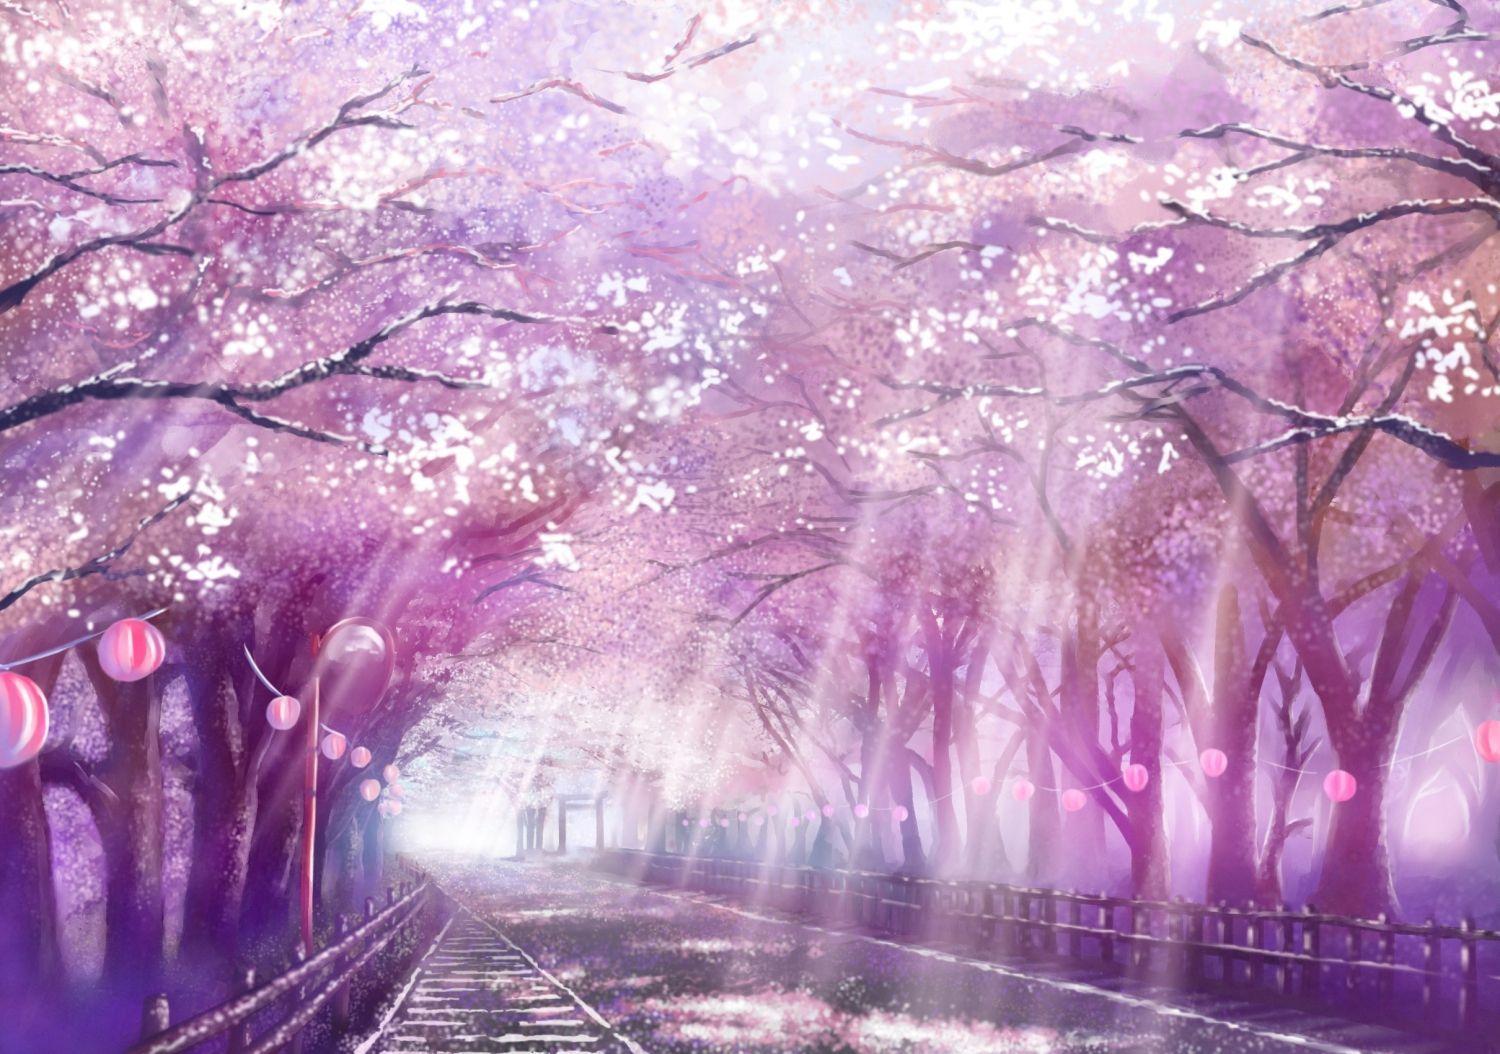 Mùa Xuân đã đến! Hãy bắt đầu bằng cách khám phá nền tảng Hoa Anh Đào Anime đầy màu sắc và vui nhộn. Những cảnh quan tuyệt đẹp và những nhân vật đáng yêu sẽ làm bạn đắm chìm trong thế giới hoa anh đào rực rỡ. Hãy cùng nhau tạo ra những trải nghiệm đáng nhớ!